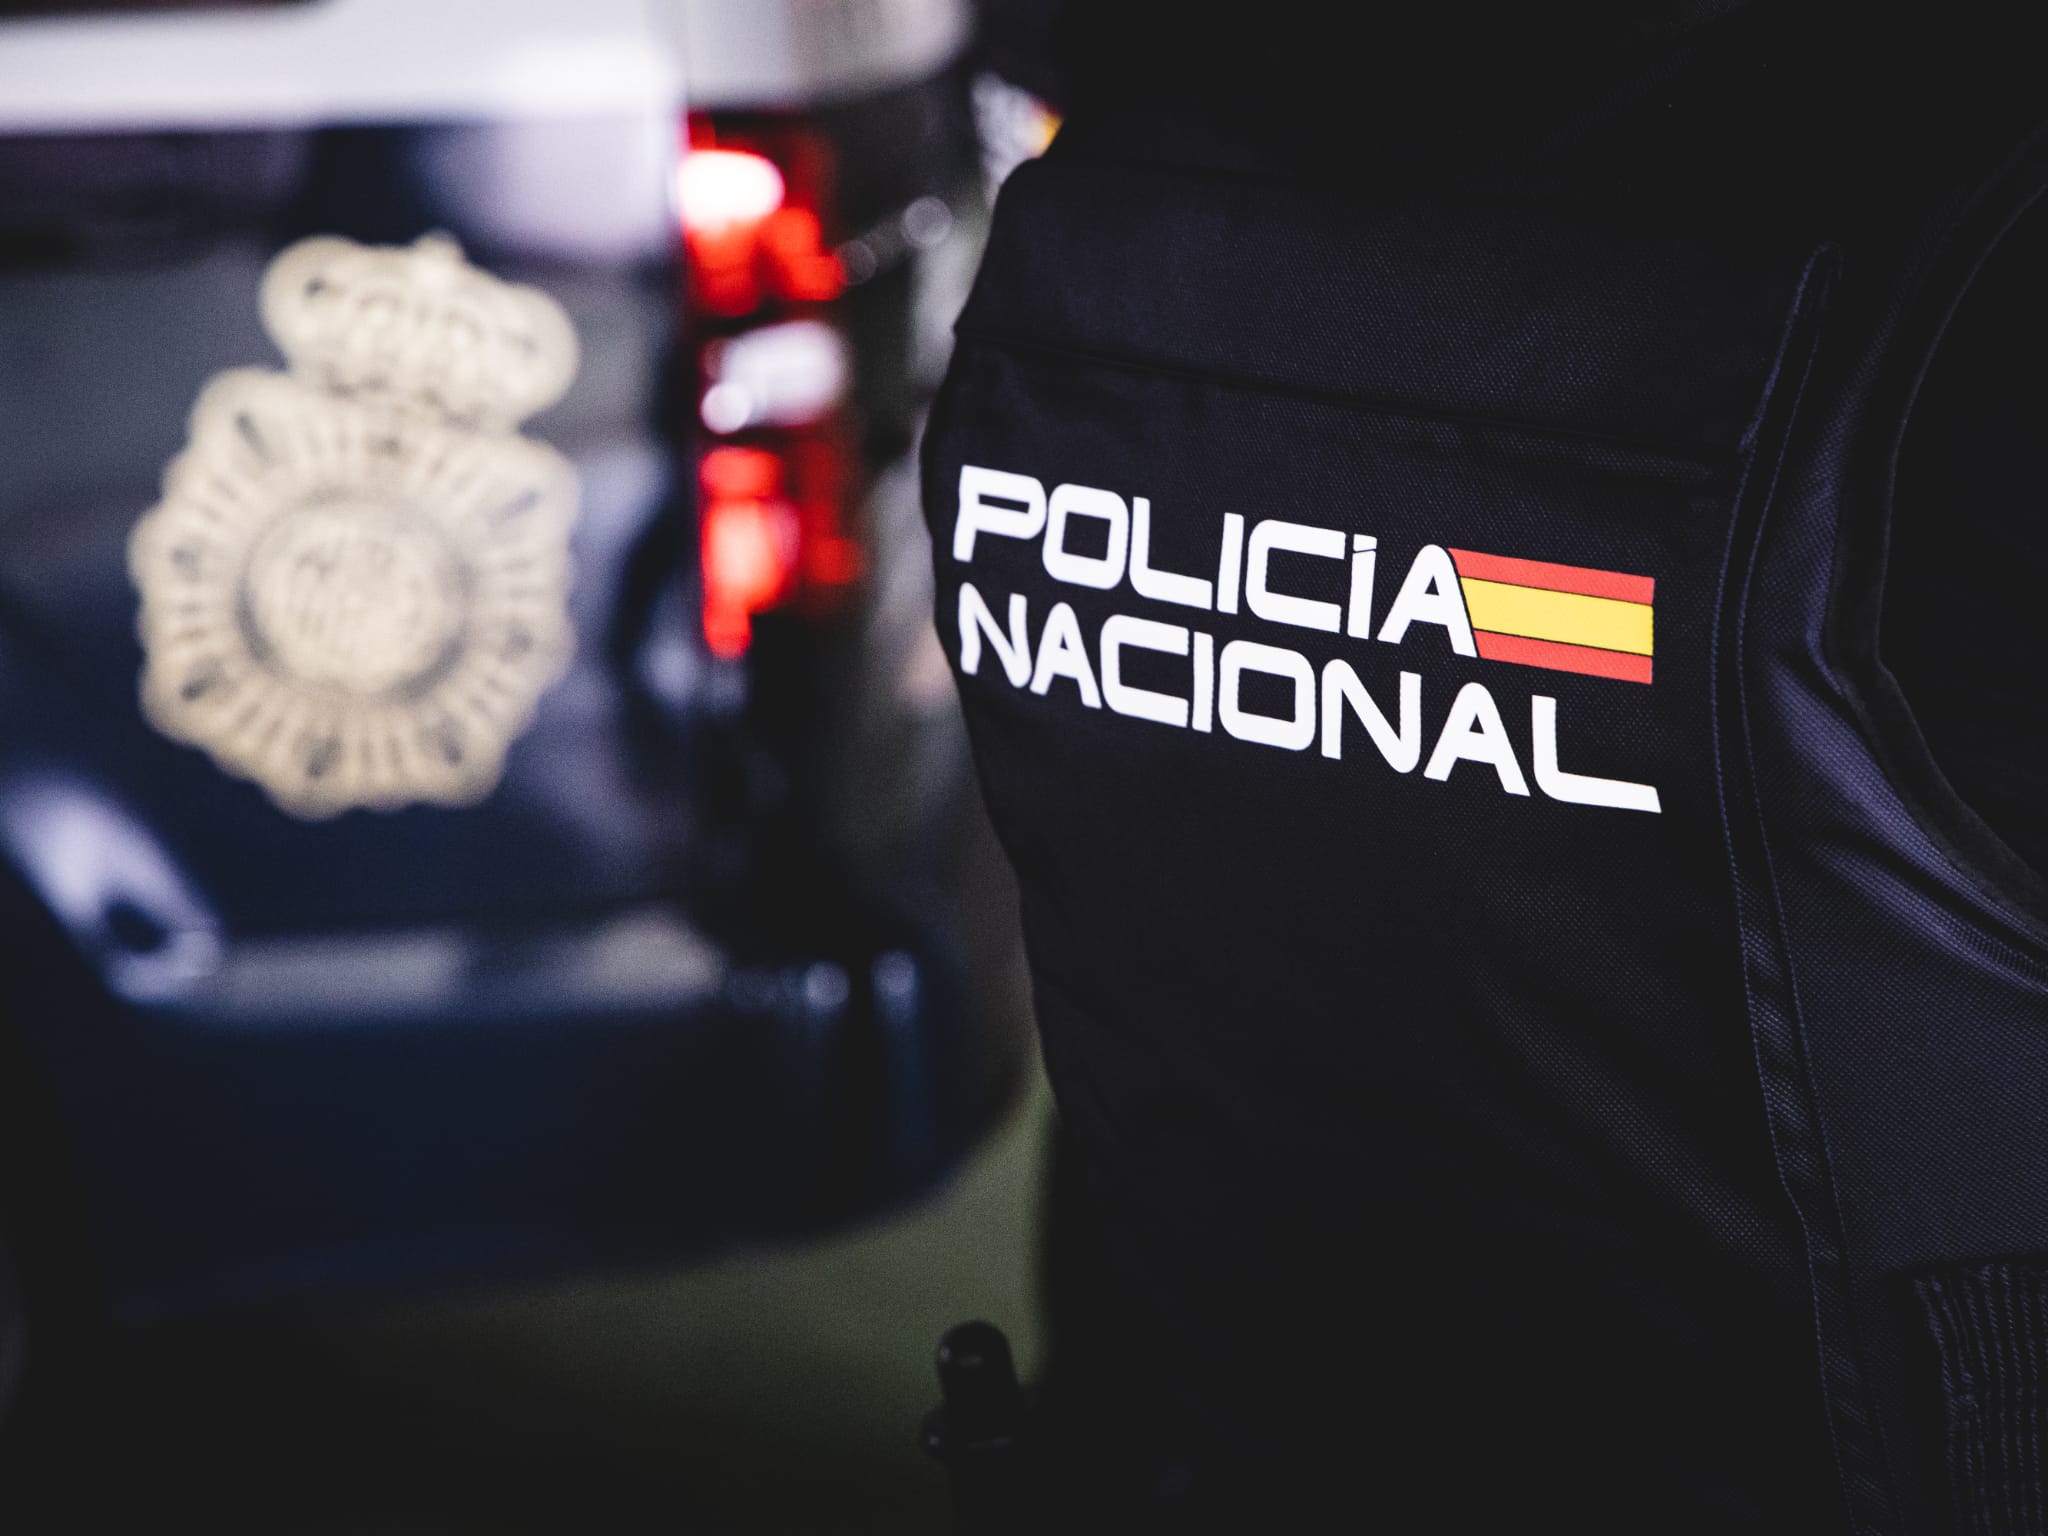 La Policía Nacional, 200 años al servicio de España